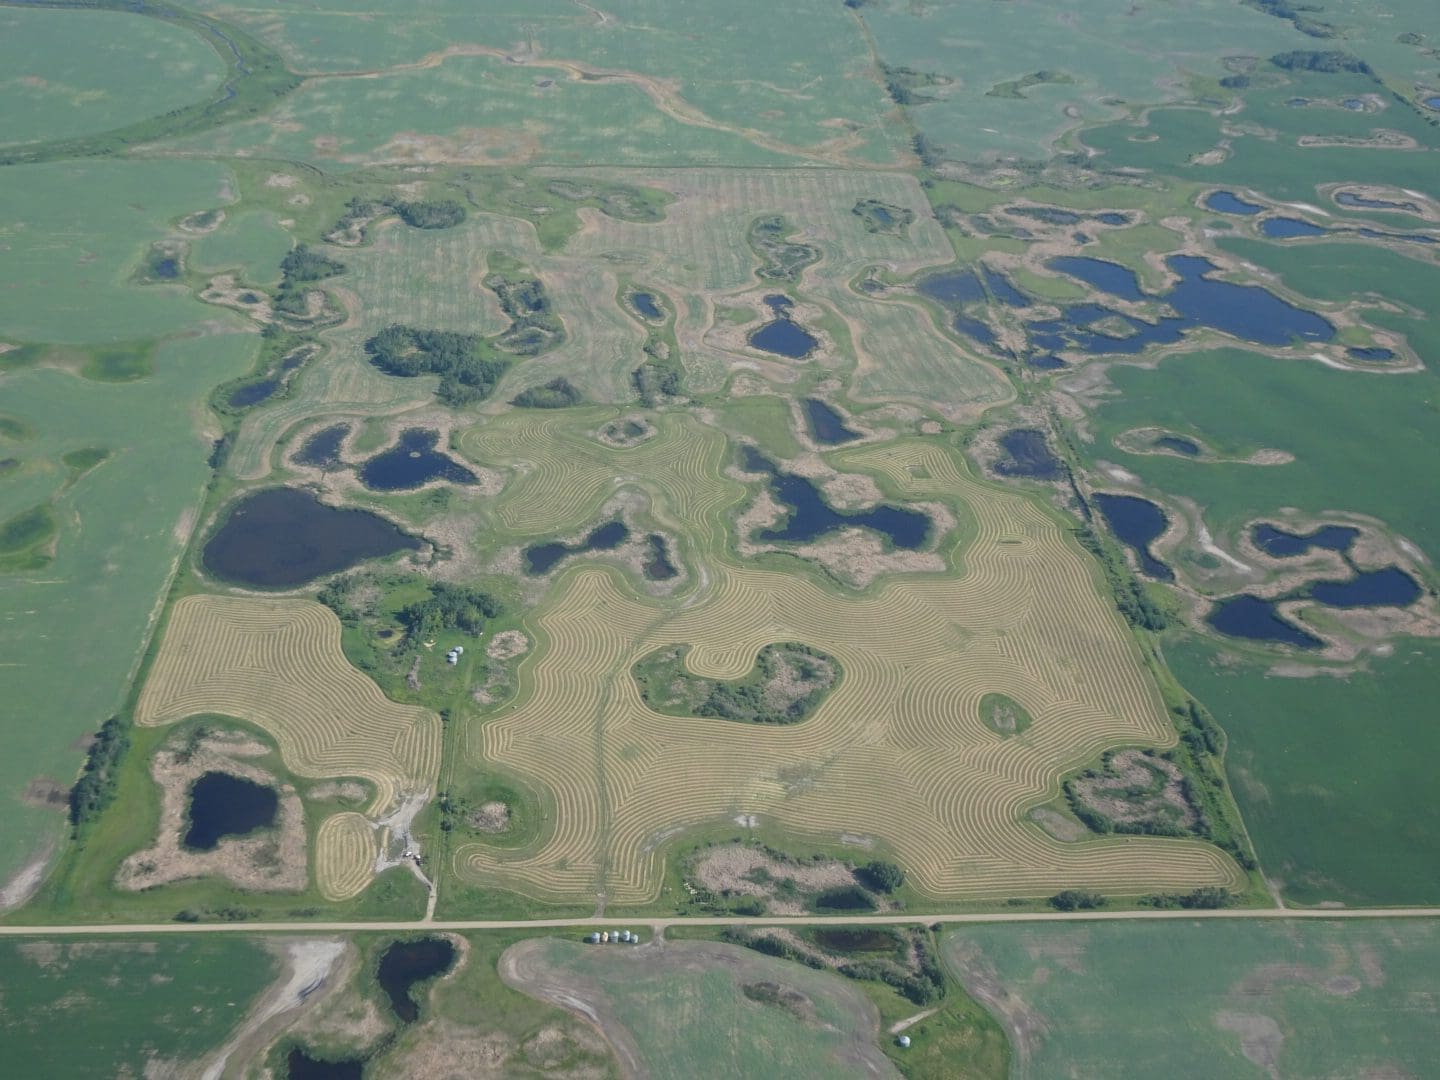 Manitoba farmer appreciates wetlands during prairie drought